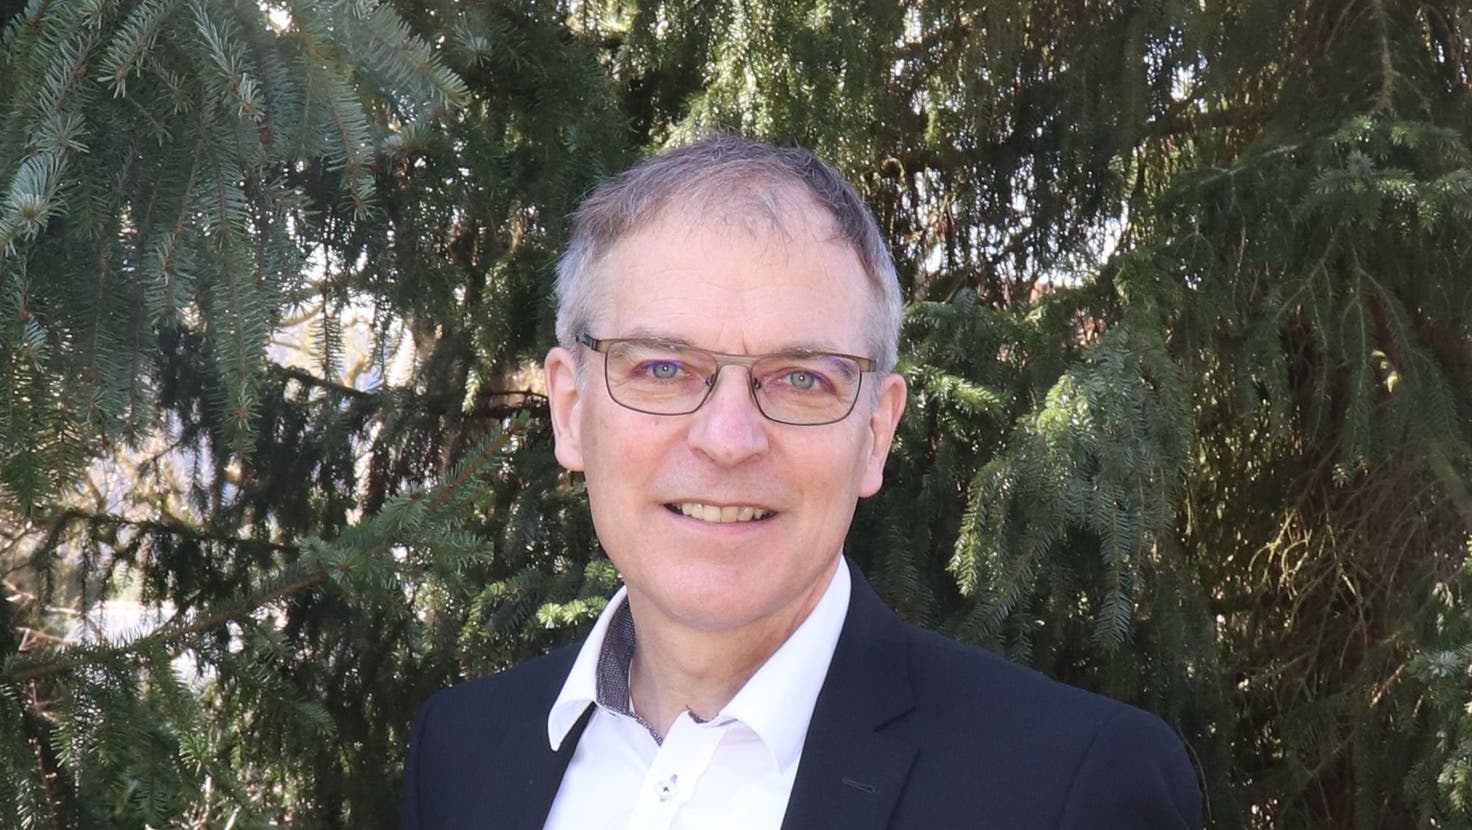 Dieter Künzli, der Gemeindepräsident von Breitenbach, kandidiert für die GLP für den Ständerat. (Bild: Zvg)